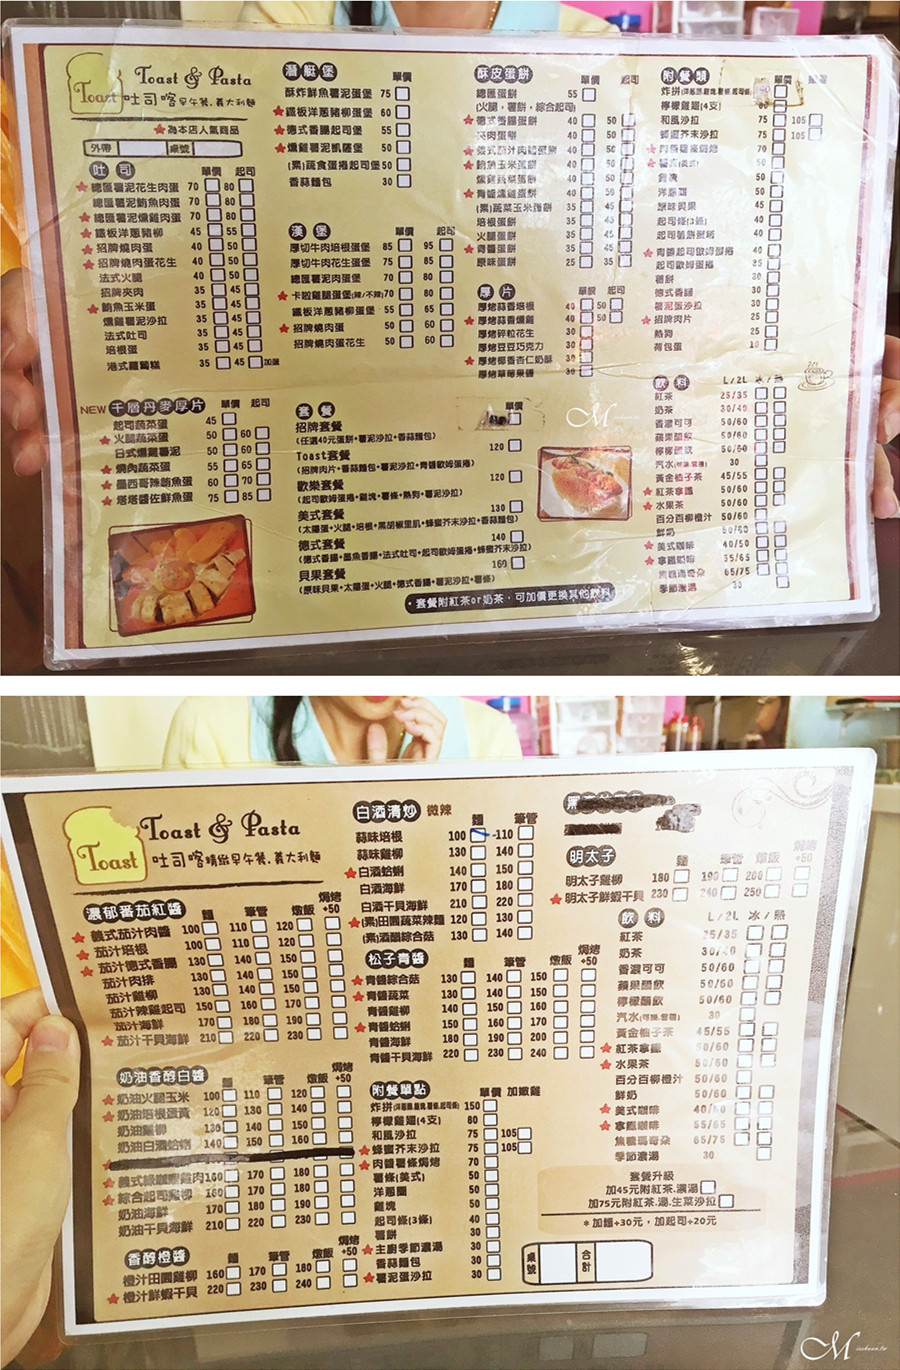 吐司喀 早午餐 義大利麵 Toast brunch & pasta 台北重慶北店